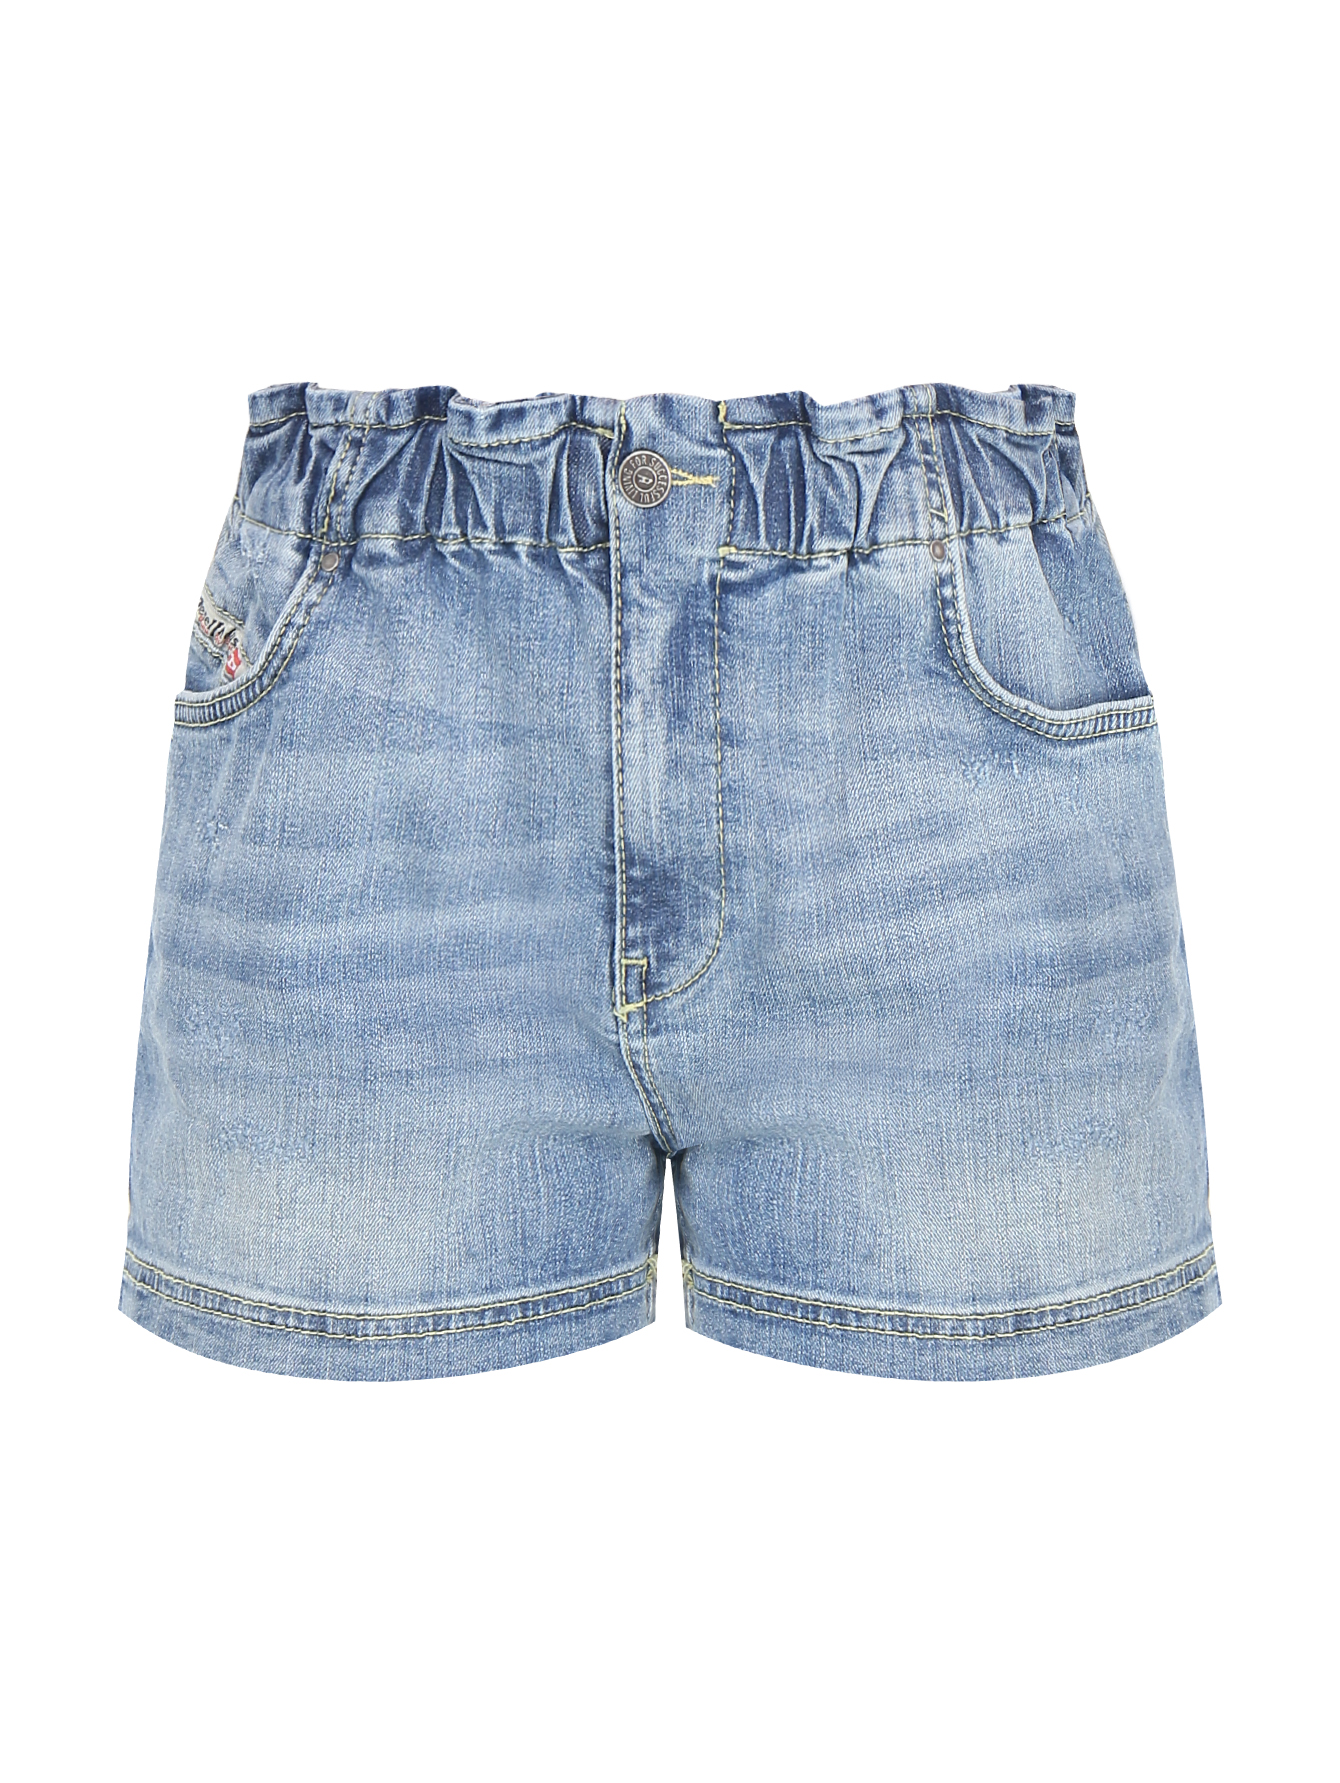 Женские джинсовые шорты на резинке синего цвета 164R700-281